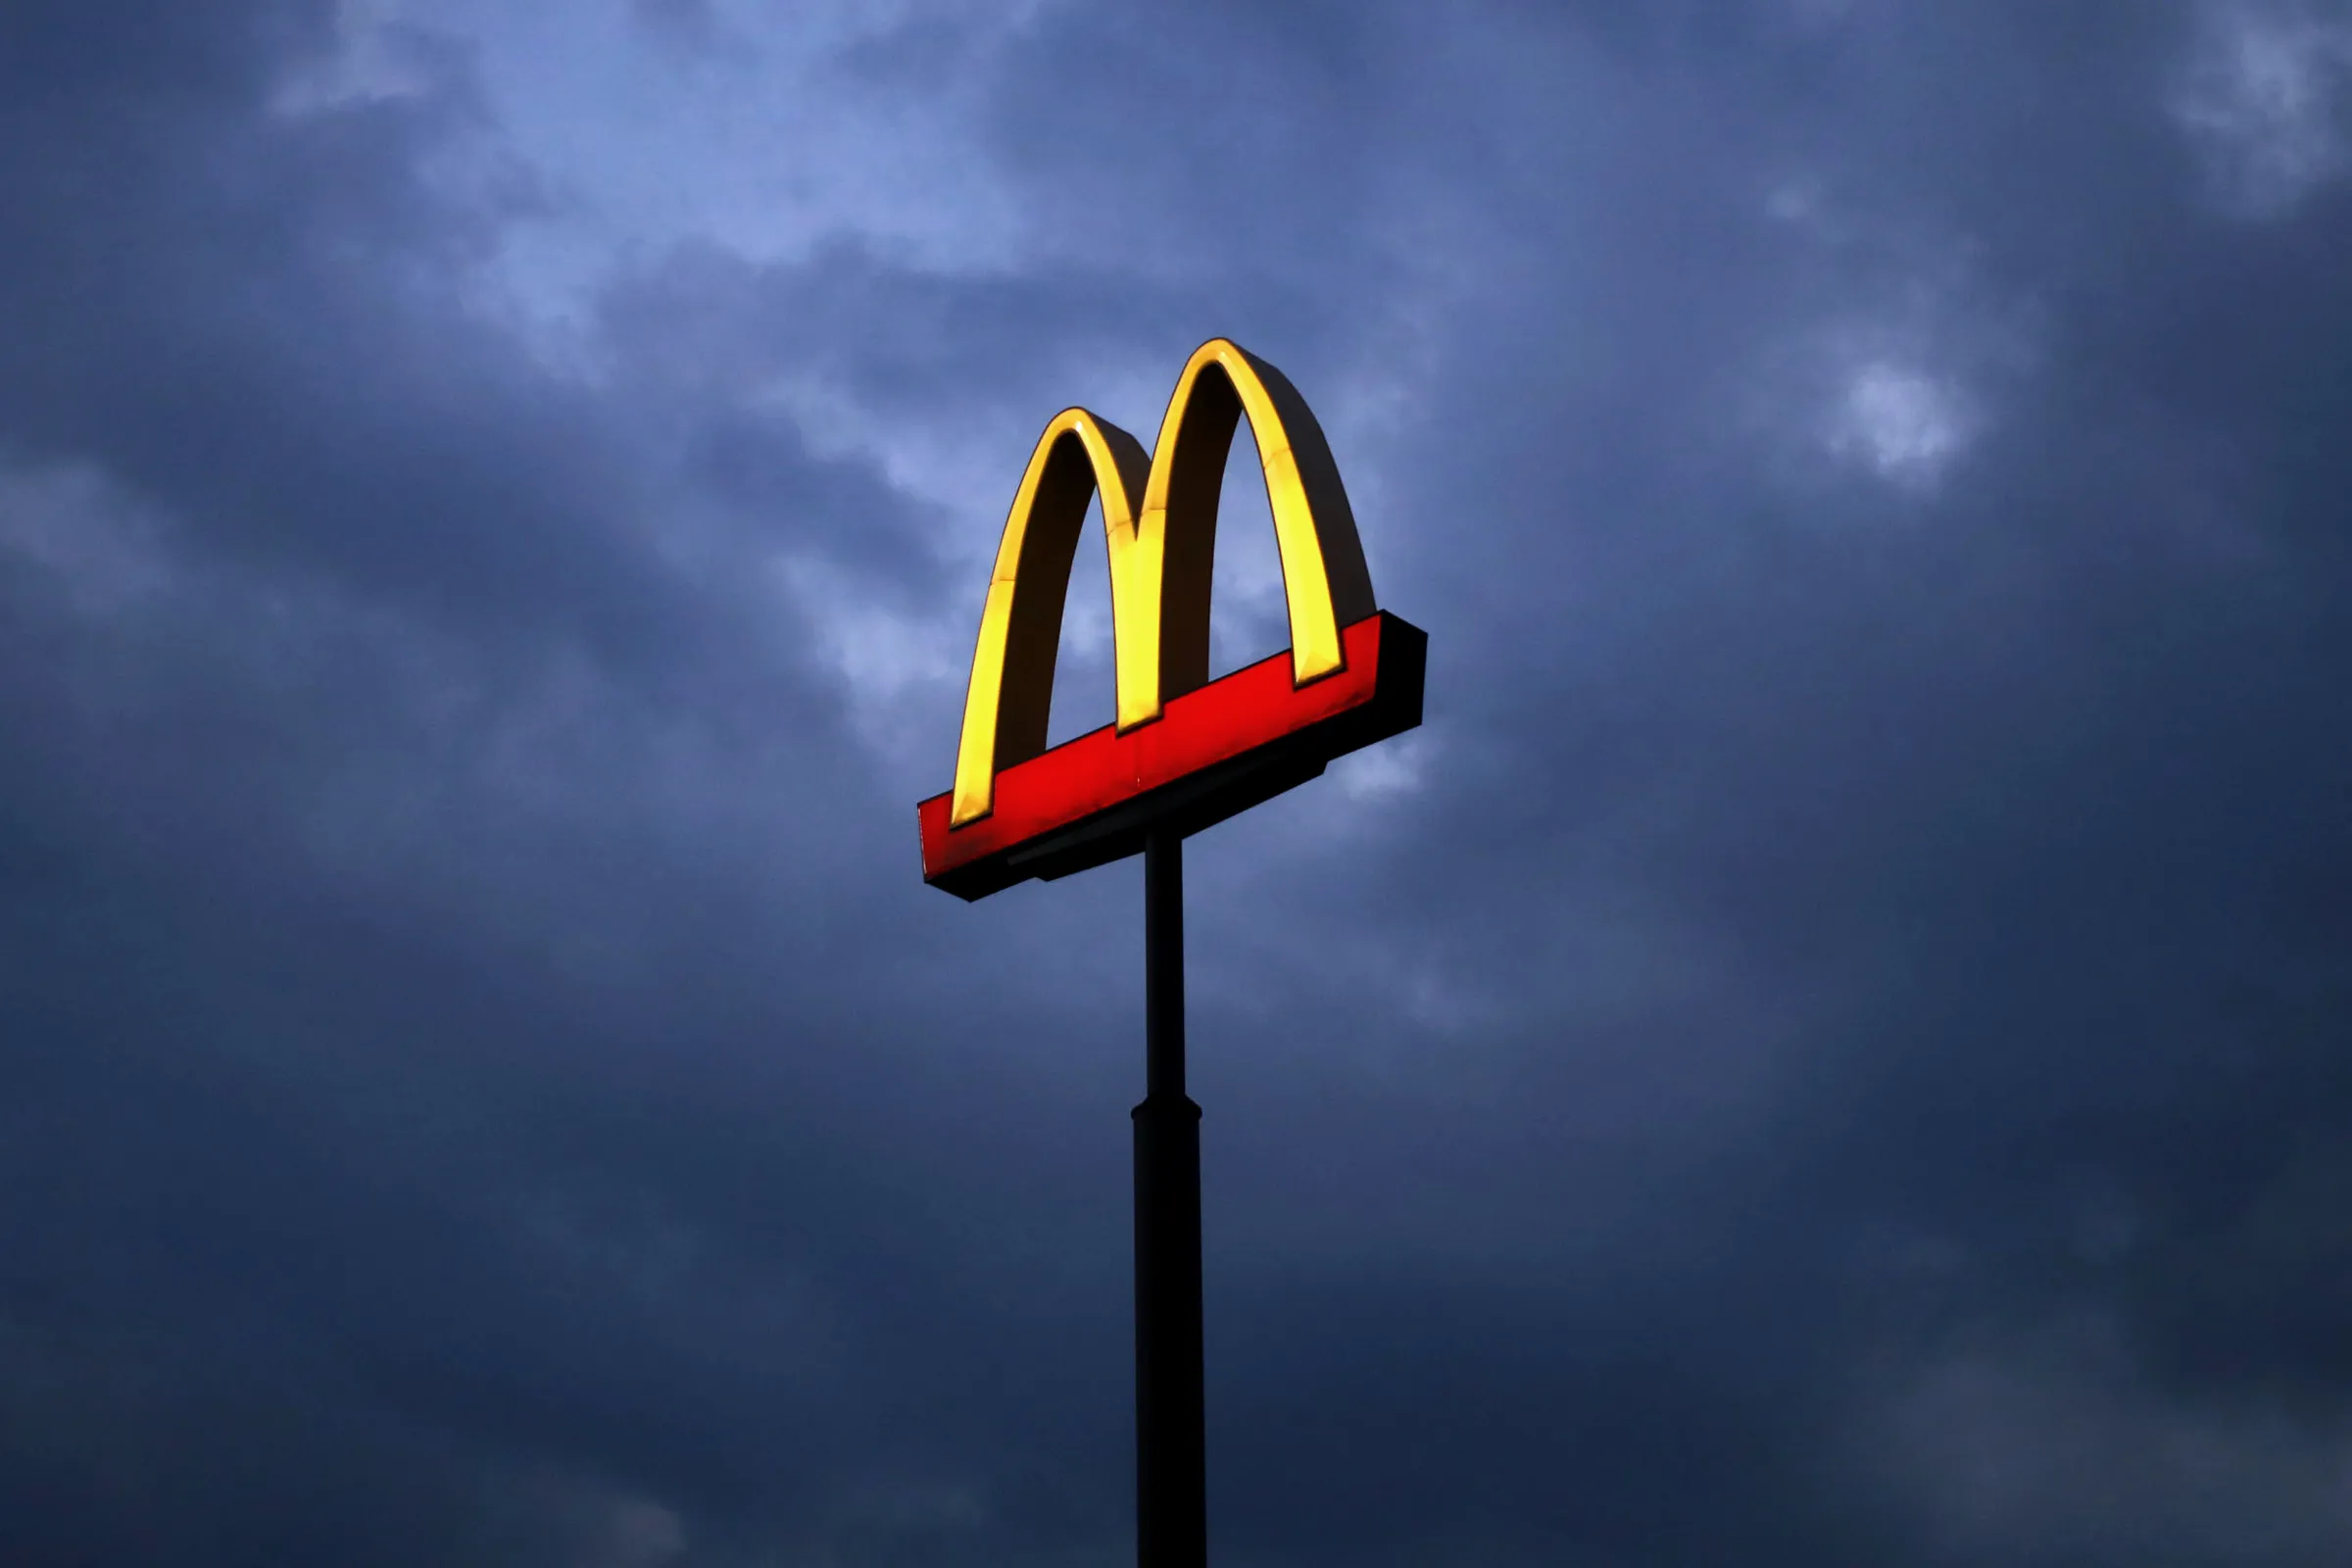 McDonalds Layoffs